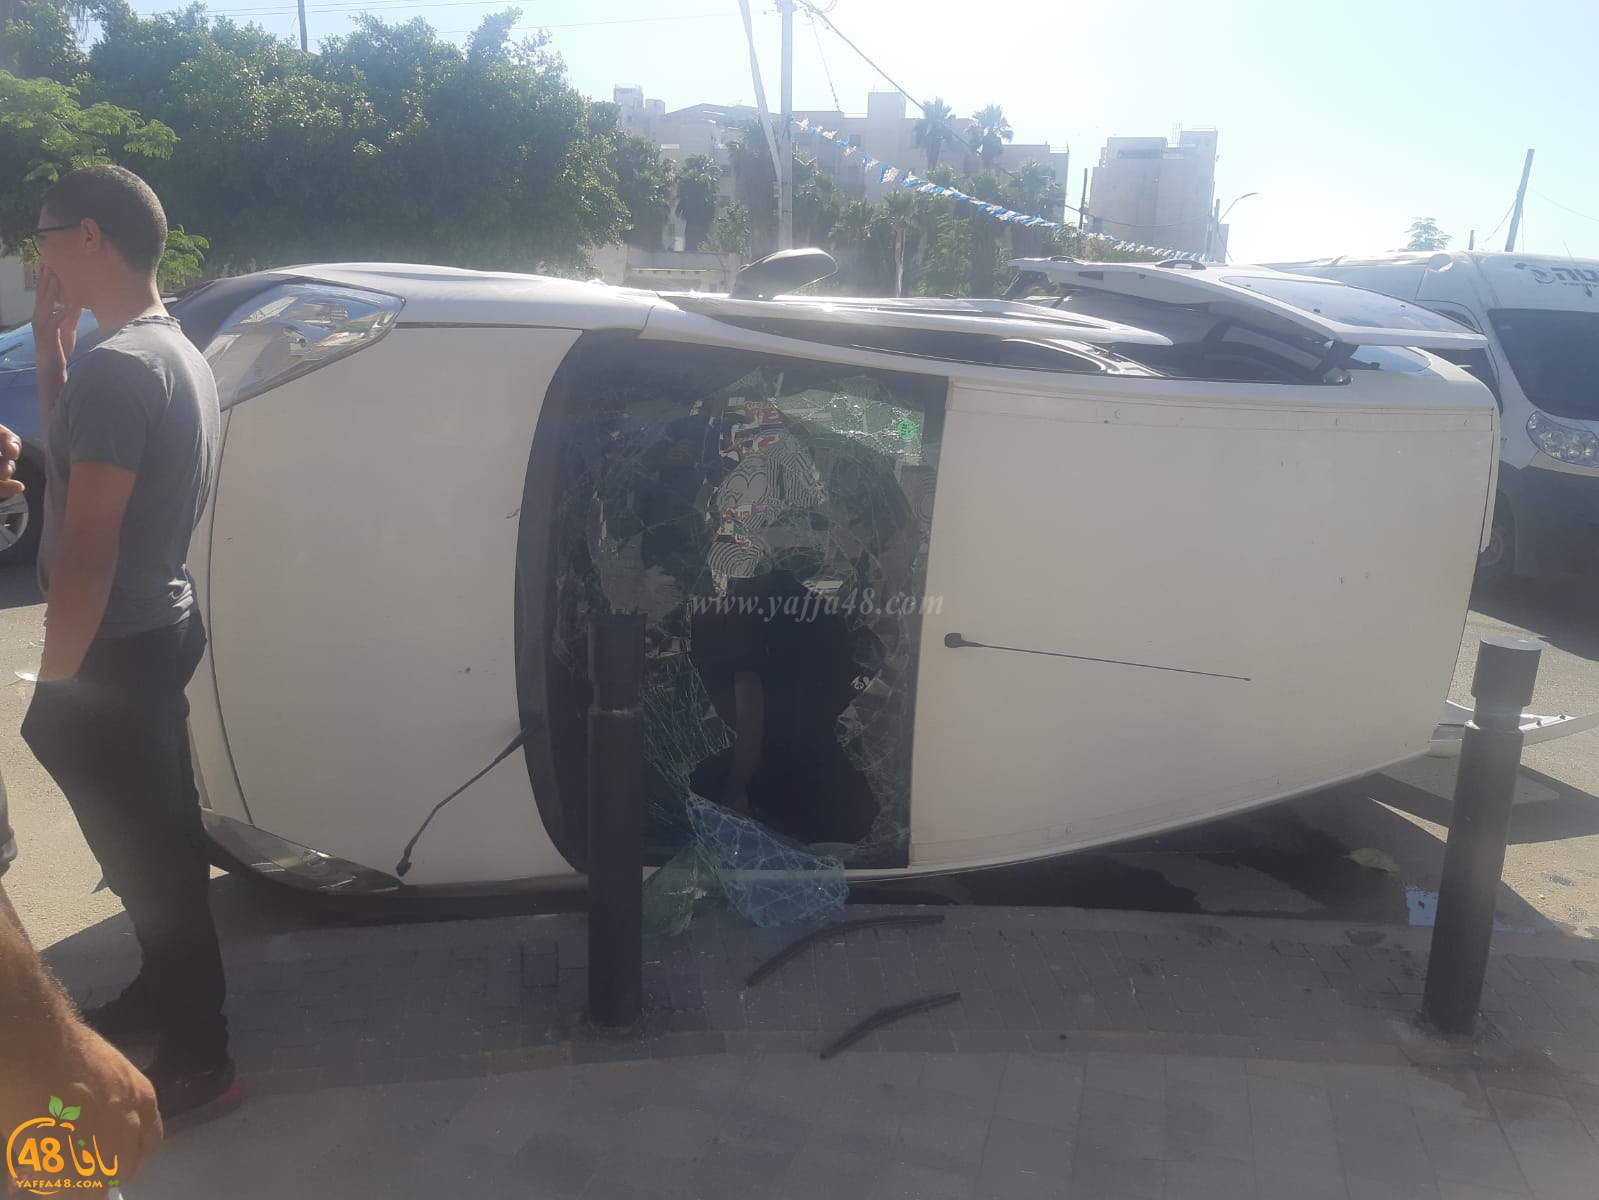  فيديو: إصابة متوسطة بحادث وانقلاب مركبة في مدينة اللد